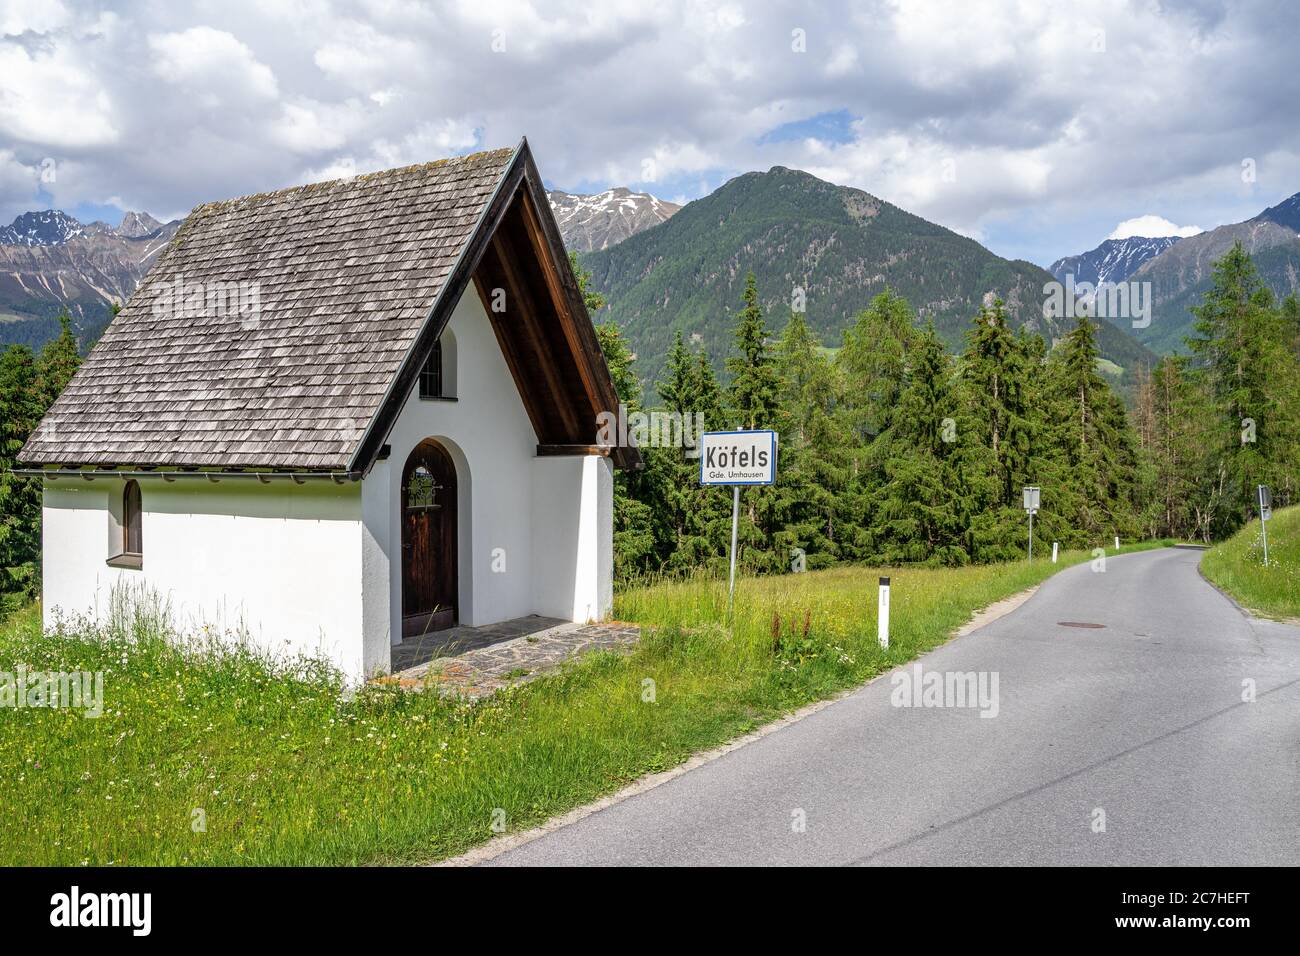 Europa, Austria, Tirol, Ötztal Alpes, Ötztal, a las afueras de Köfels en la Ötztaler Urweg Foto de stock